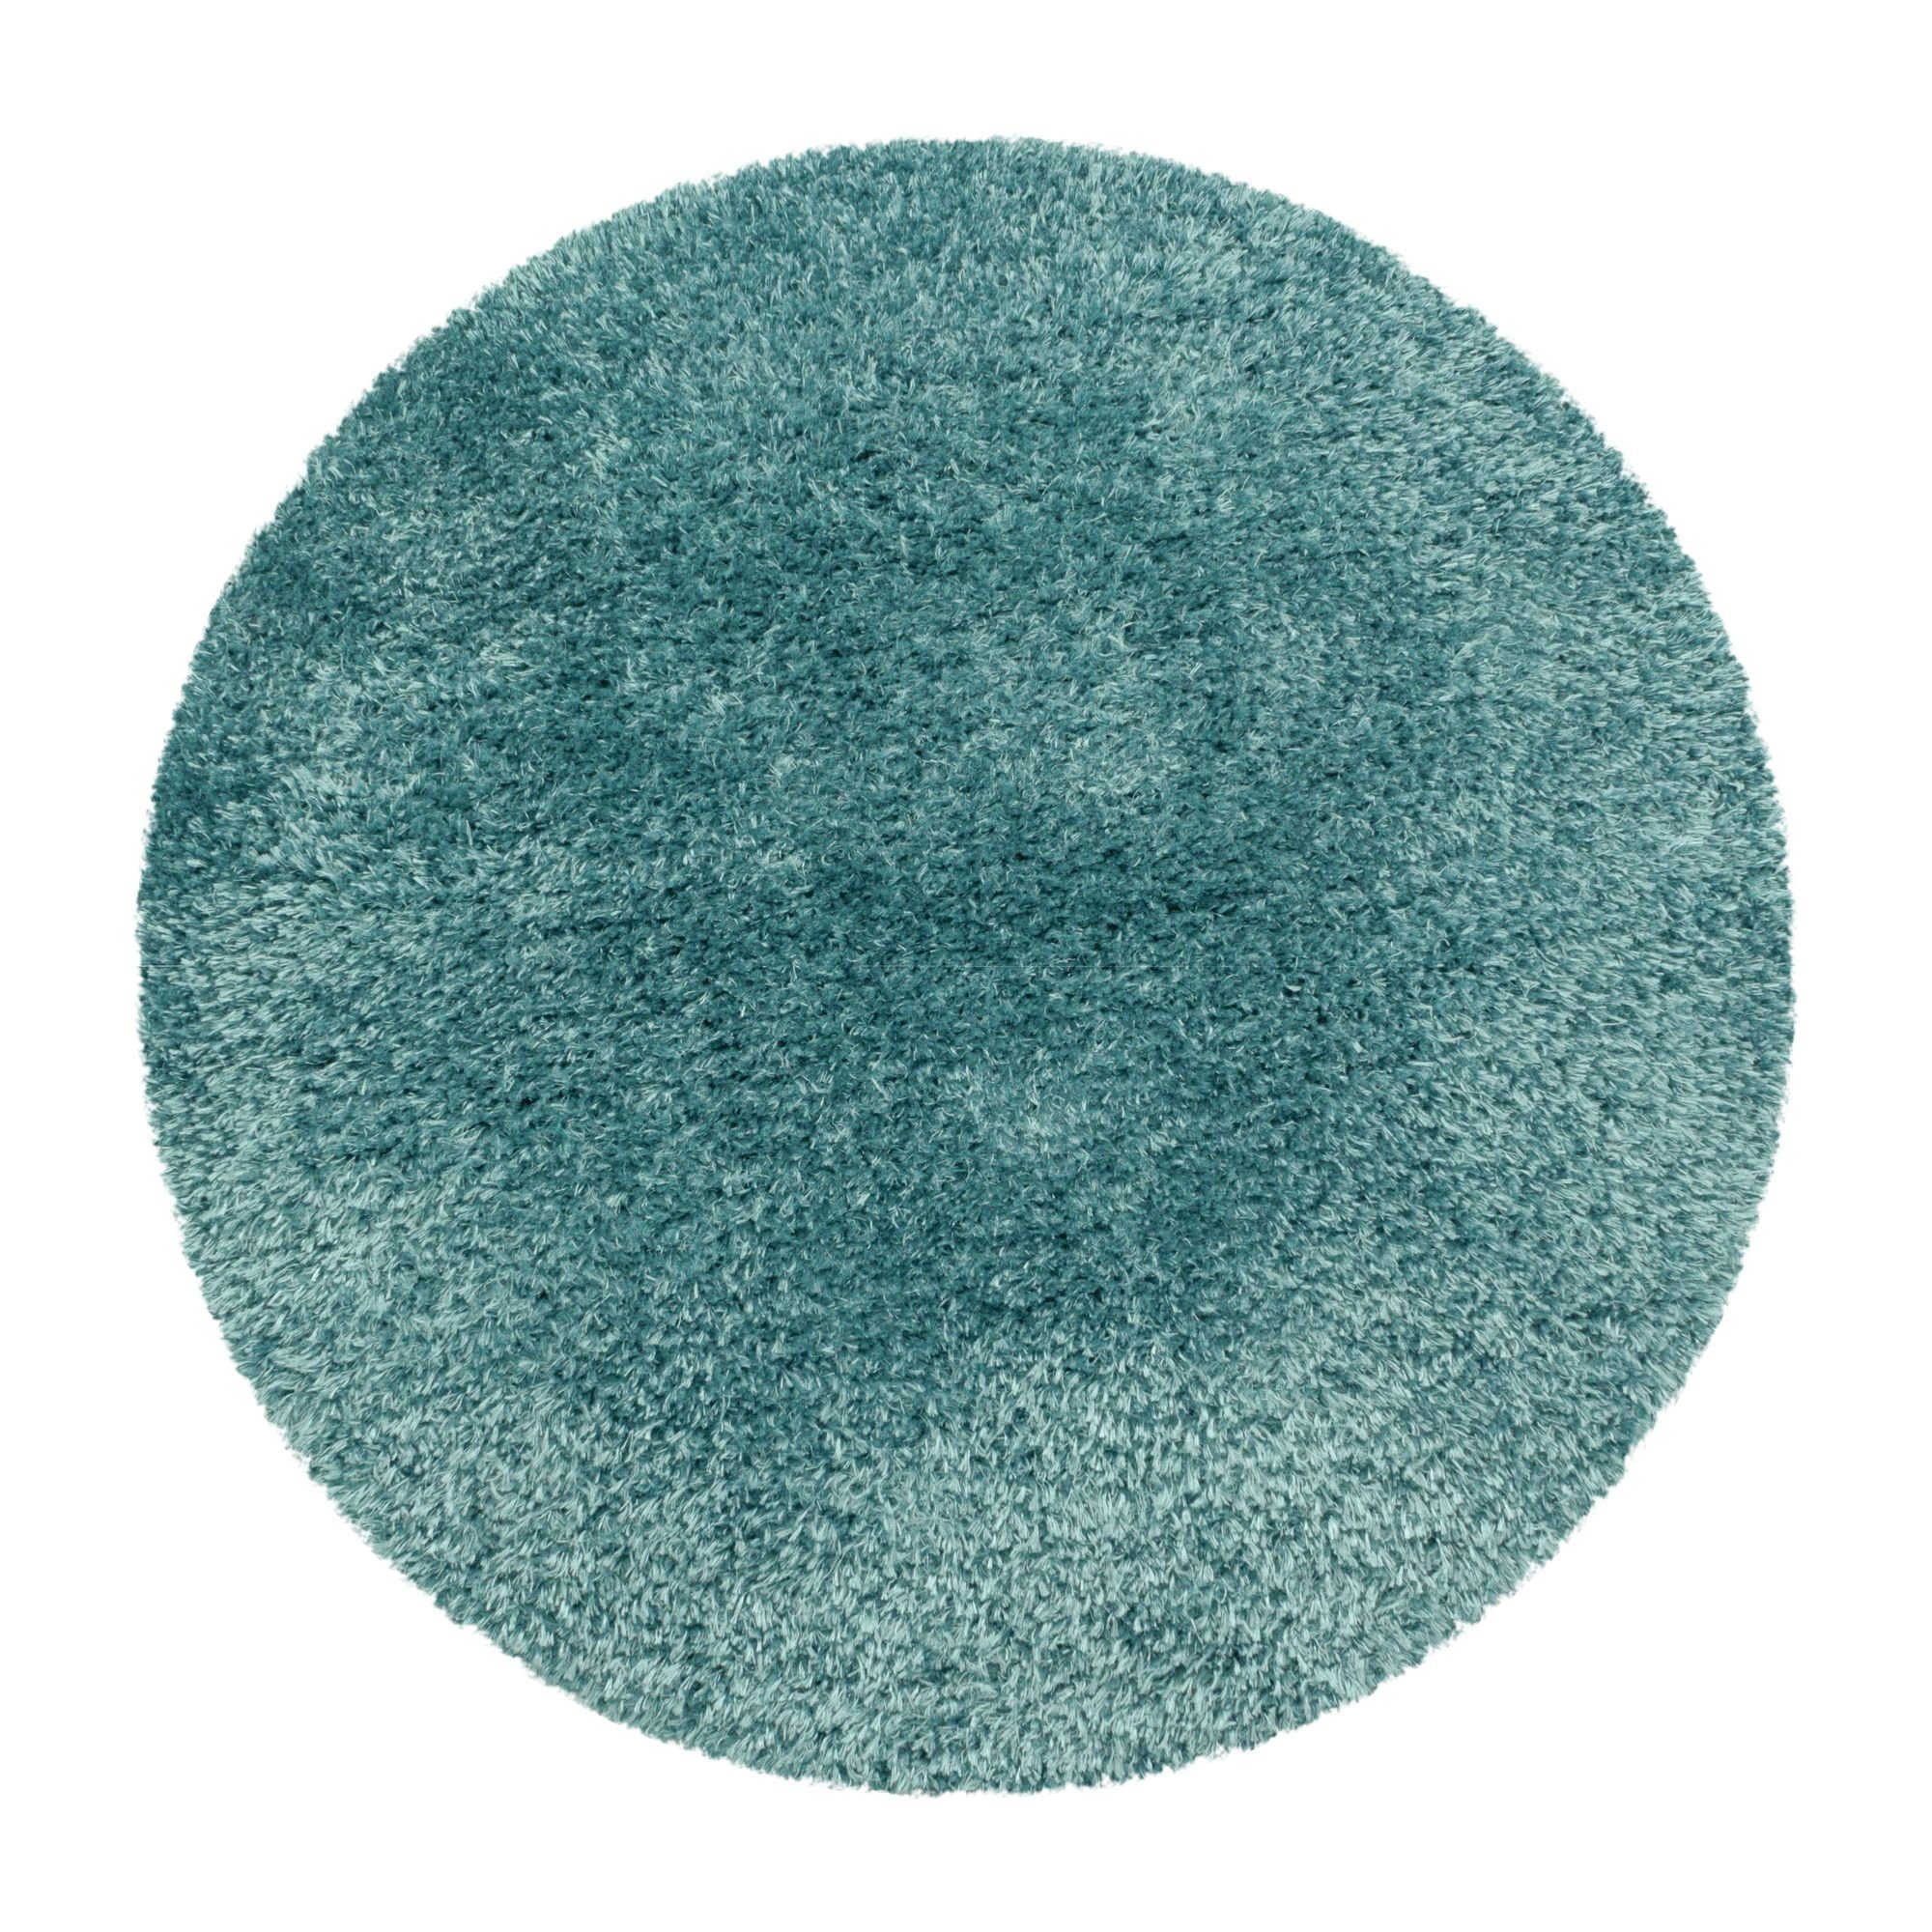 Blau 50 Höhe: Shaggy - Runder Teppich Einfarbig, Hochflor-Teppich farben Aqua Wohnzimmer Unicolor und Carpetsale24, mm, Einfarbig größen Rund, versch.